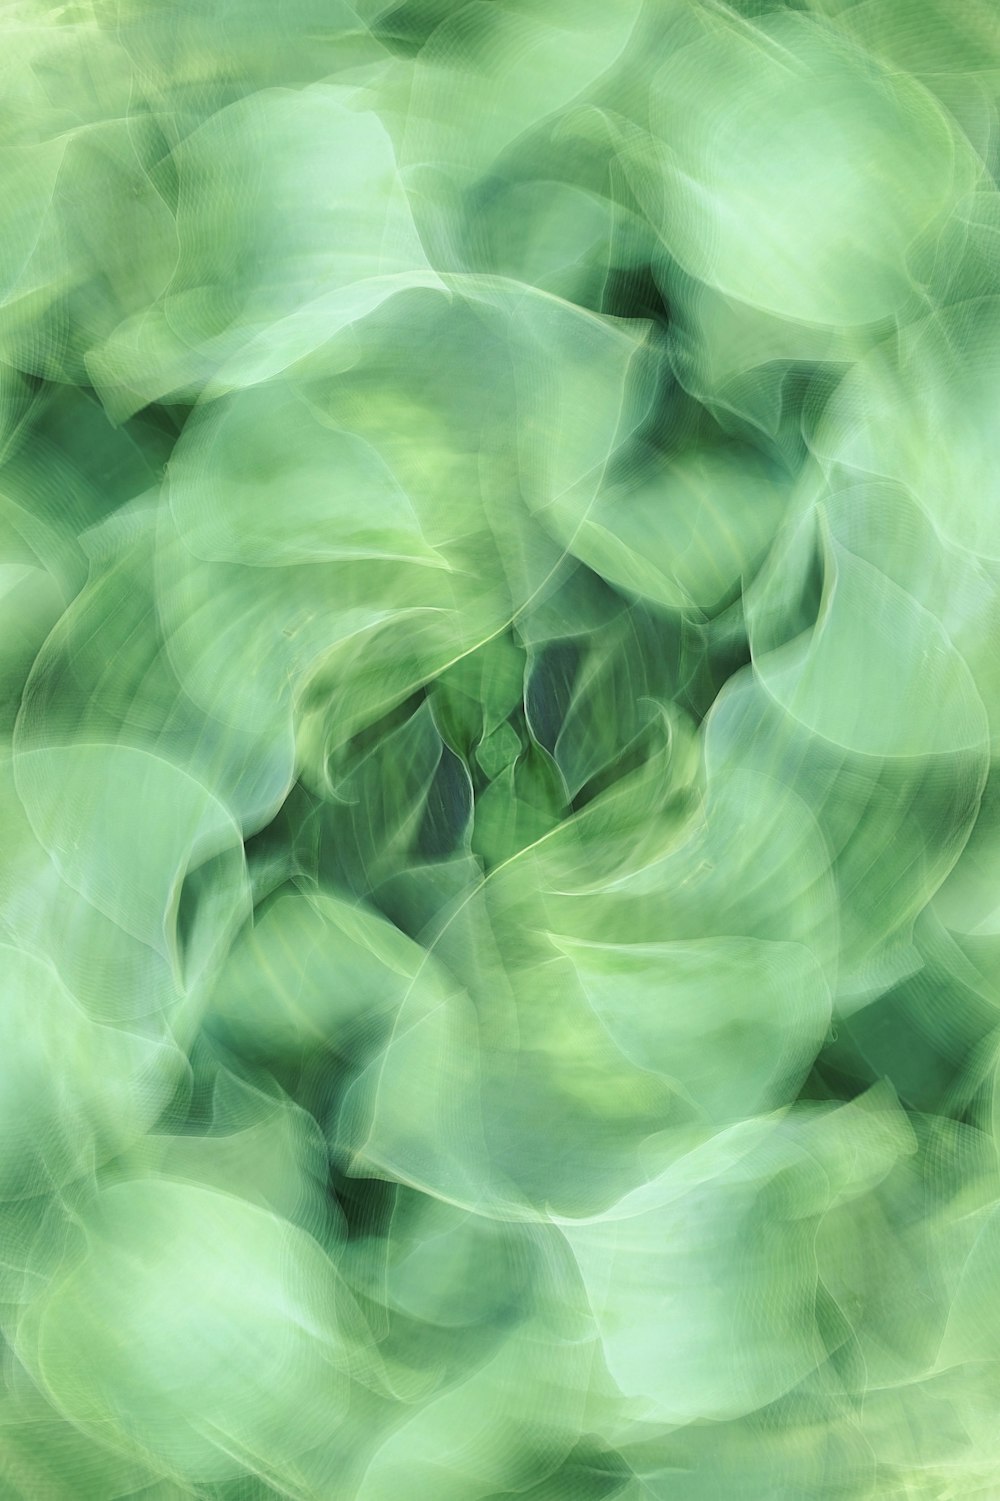 Une photo floue d’une plante verte